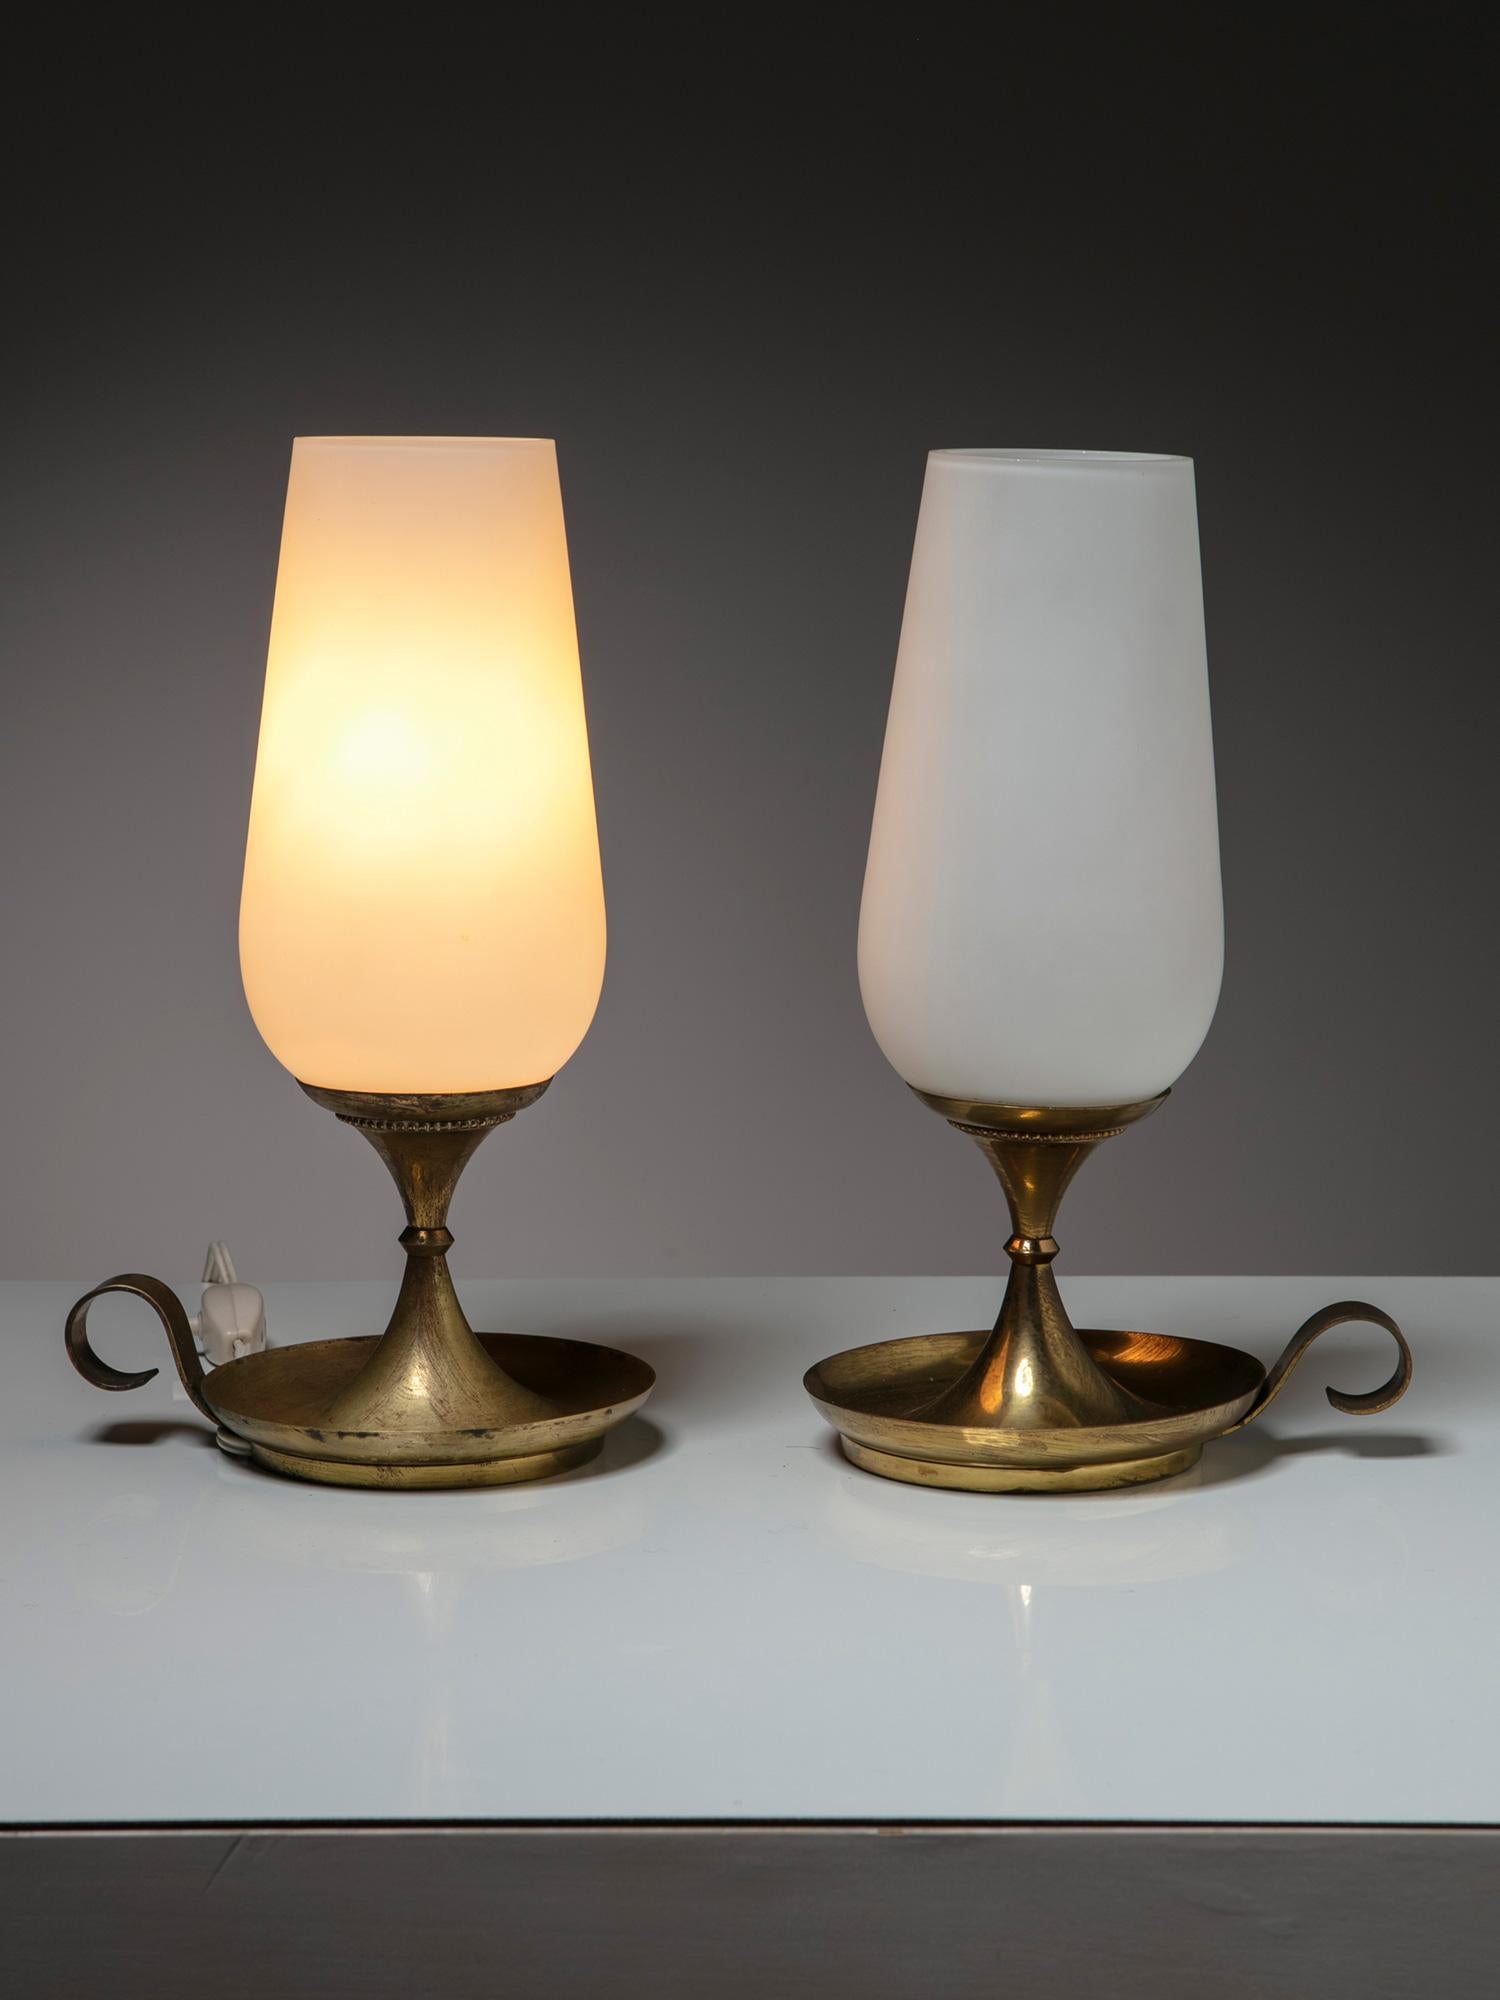 Rare paire de lampes de chevet fabriquées par Stilnovo.
Abat-jour en verre à double couche et base épaisse en laiton.